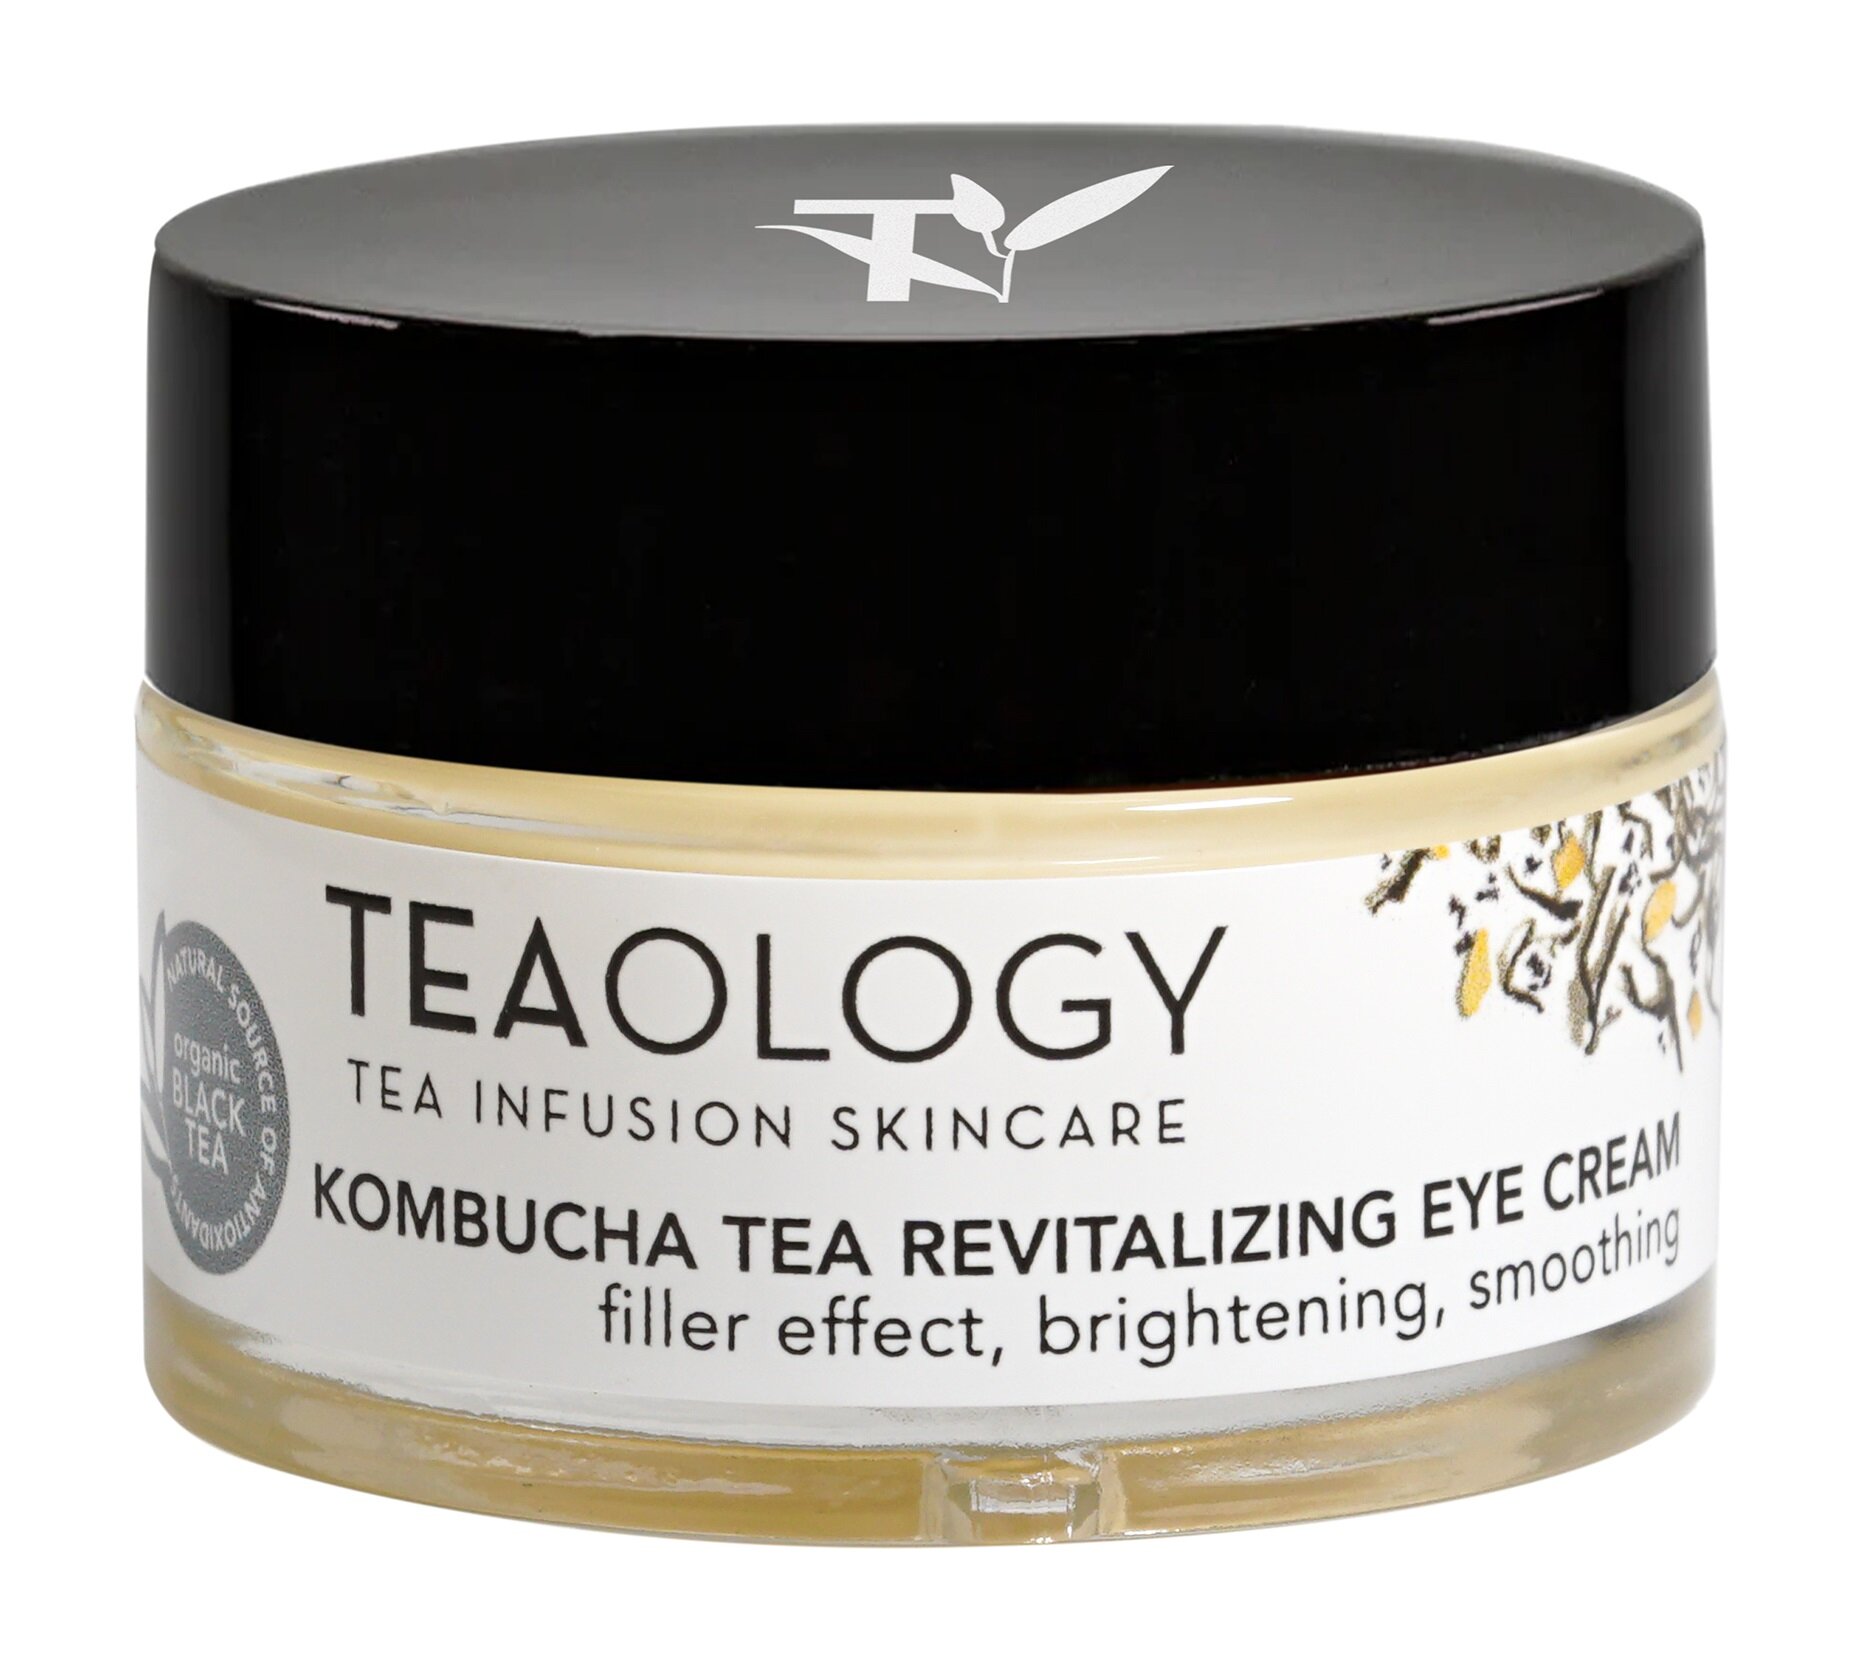 Восстанавливающий крем для глаз с комбучей и черным чаем Teaology Kombucha Tea Revitalizing Eye Cream 15 мл .